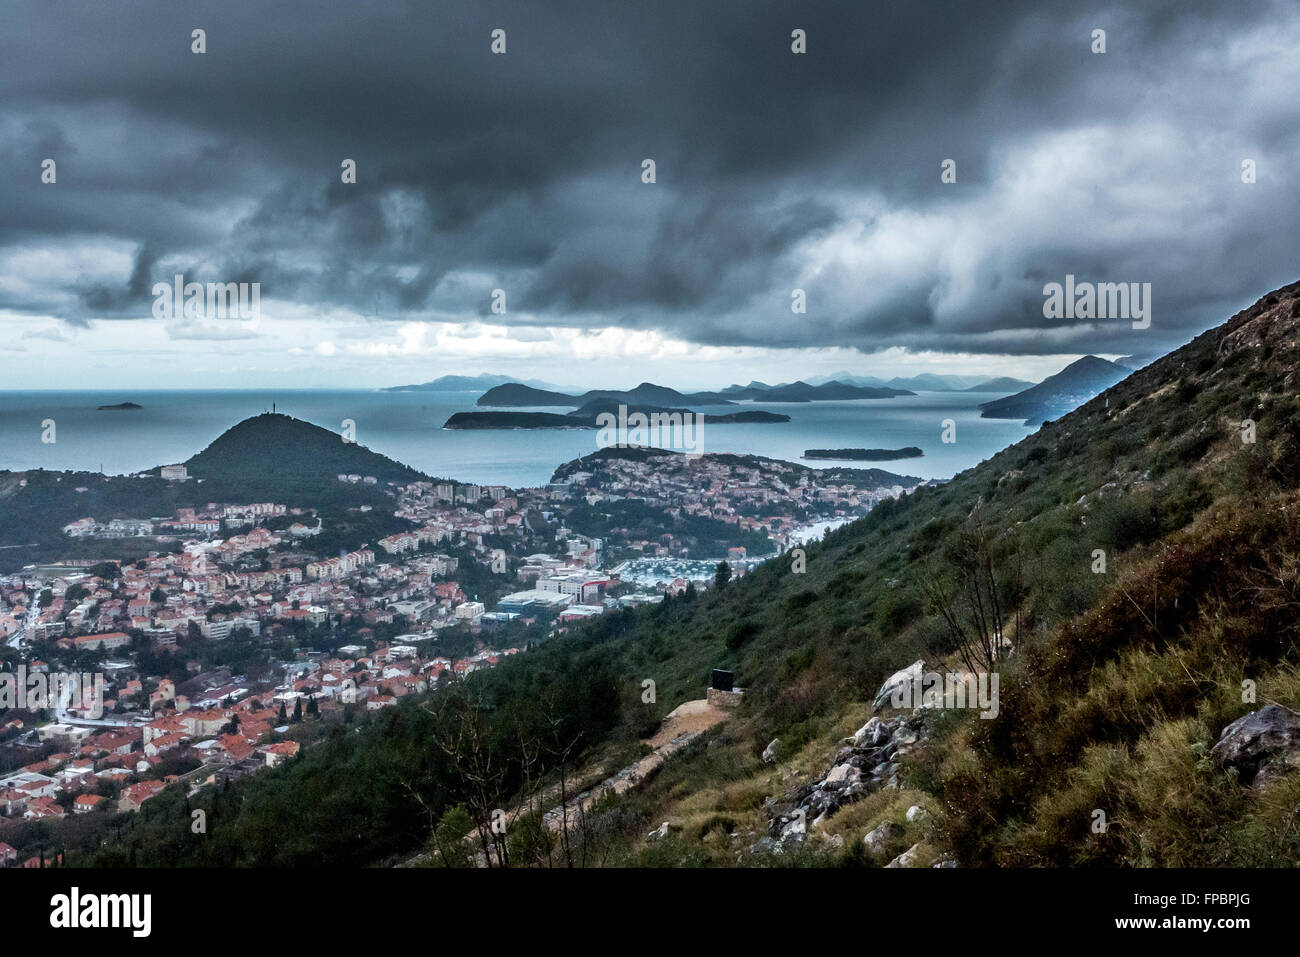 Guardando verso le isole di Elafiti dalla città di Dubrovnik in Croazia. Foto Stock